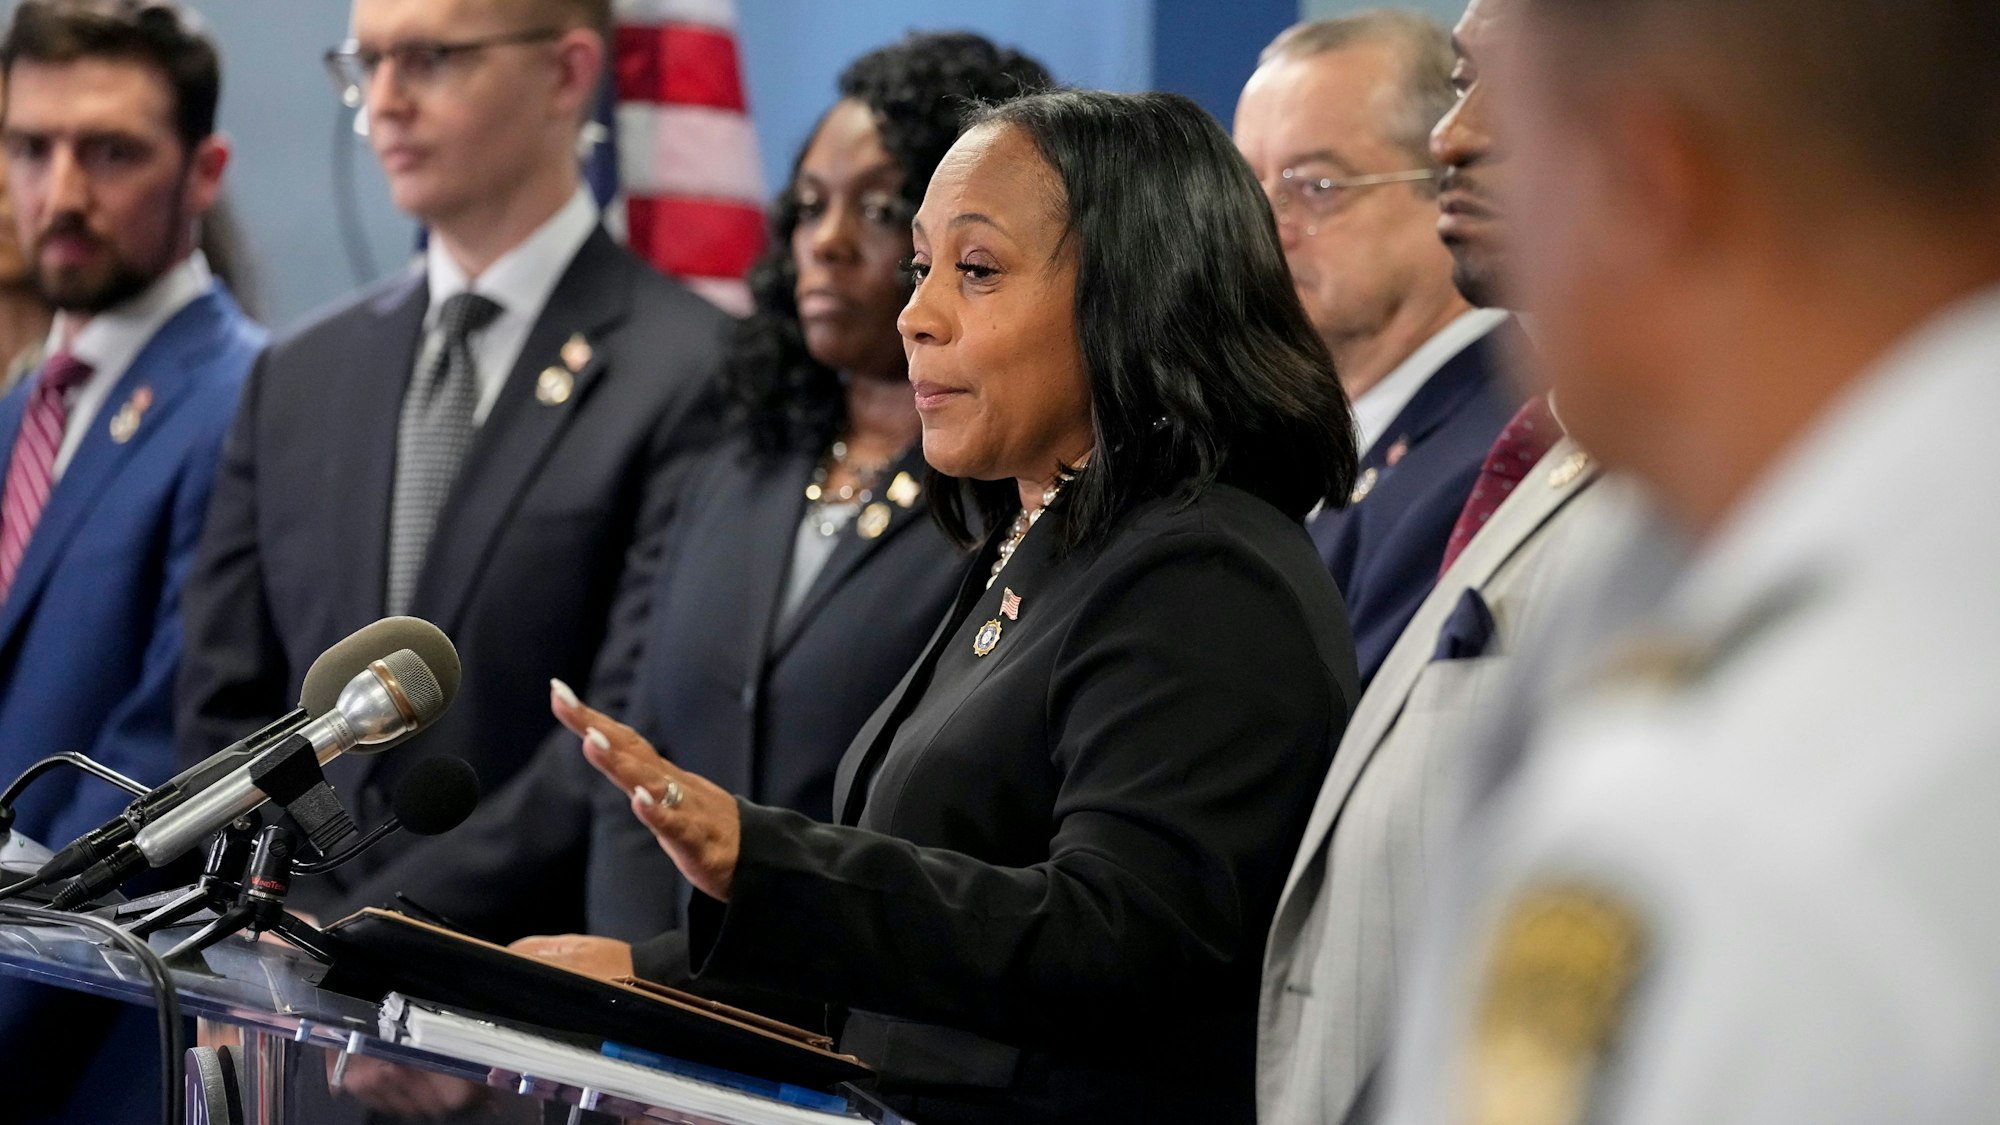 Die Bezirksstaatsanwältin Fani Willis (m.) spricht während einer Pressekonferenz. Donald Trump und mehrere Verbündete sind in Georgia angeklagt worden, weil sie versucht haben, seine Wahlniederlage von 2020 in diesem Bundesstaat zu kippen.